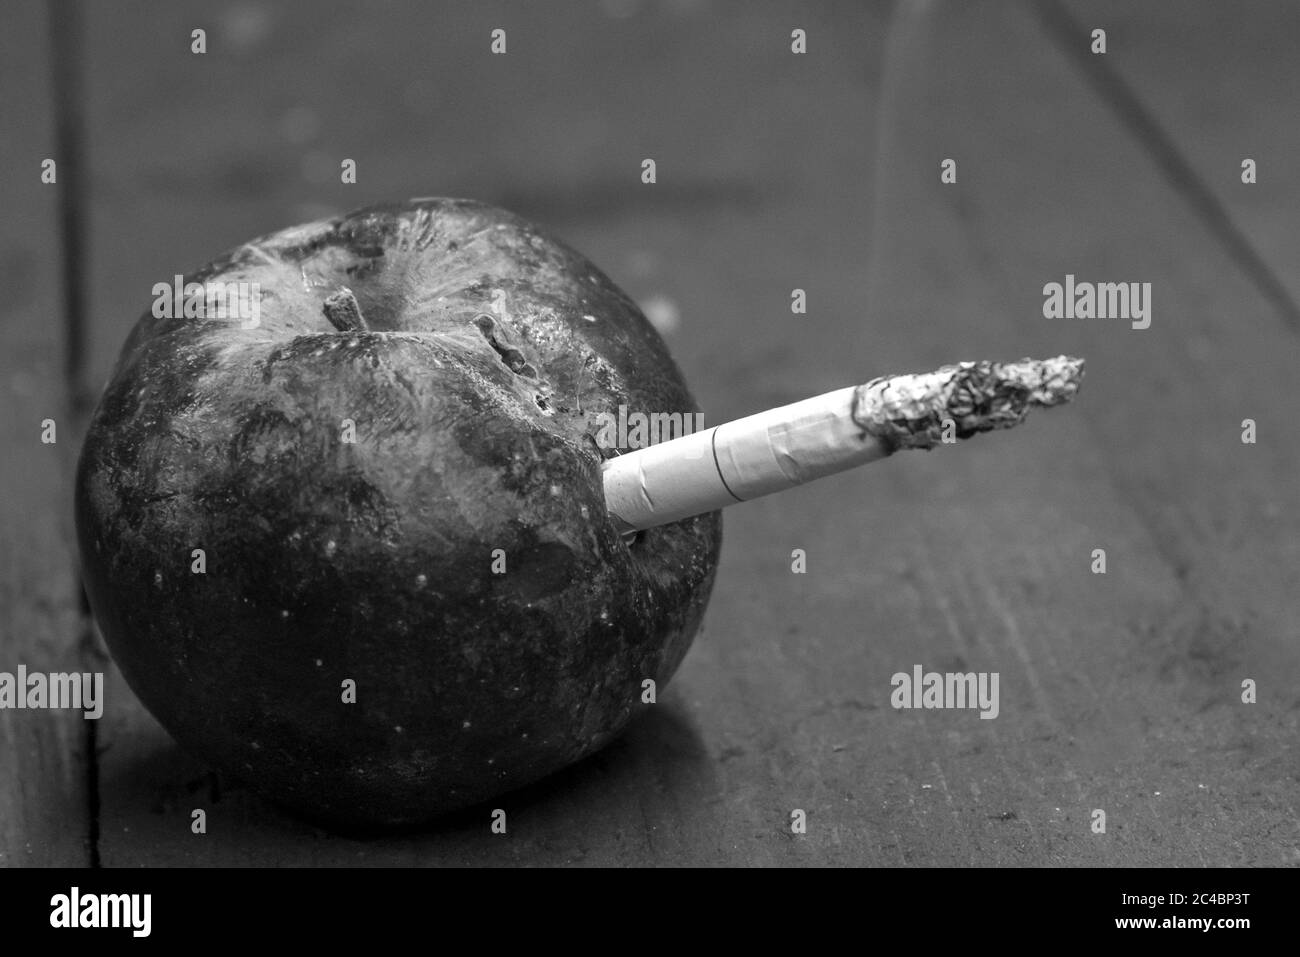 Zigarette in einem faulen getrockneten Apfel, das Konzept der Schaden des Rauchens, schwarz-weiß Foto eingefügt Stockfoto